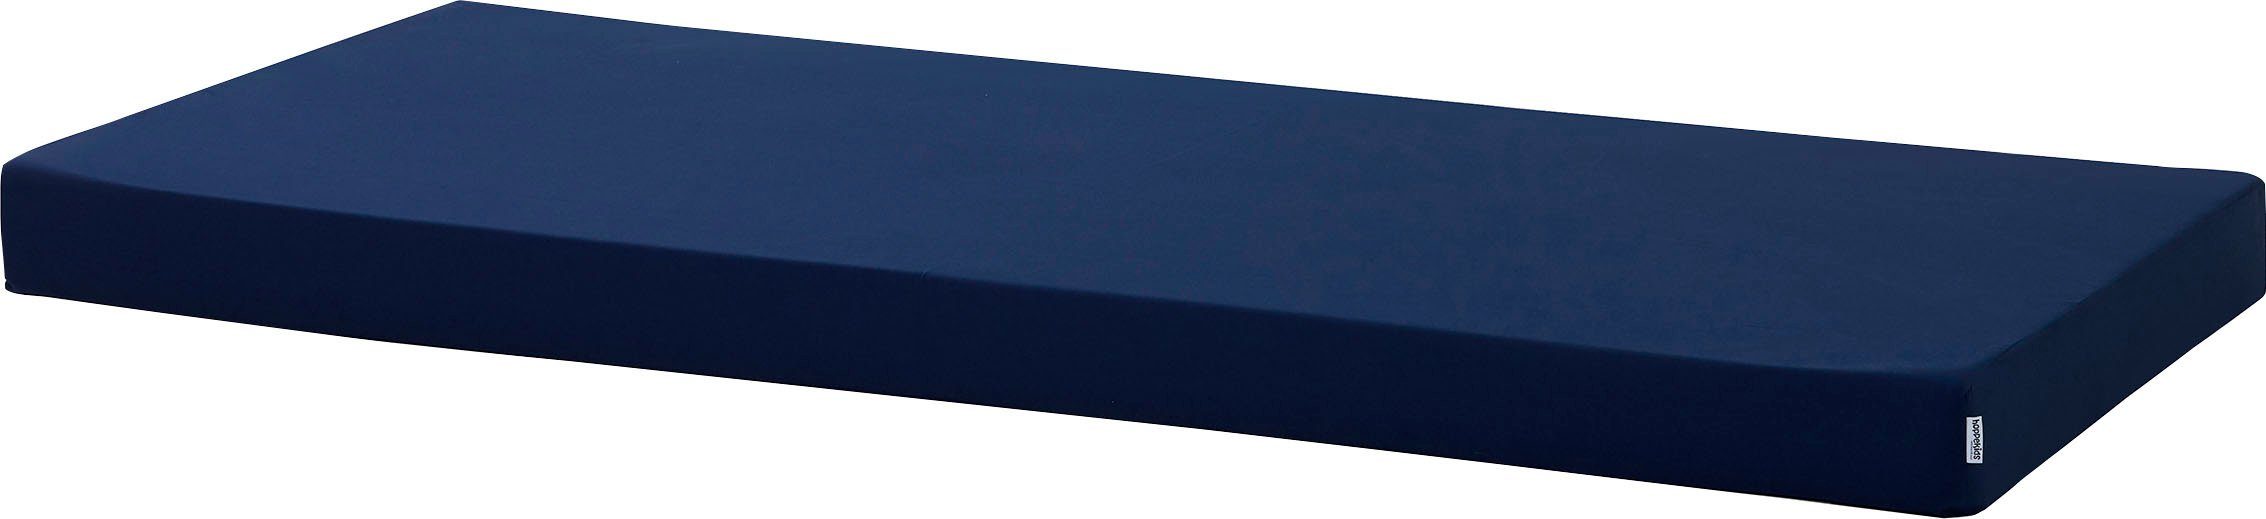 hoppekids kindermatras 90x200 - 12 cm  beschermer in 5 kleuren hoogte 12 cm blauw